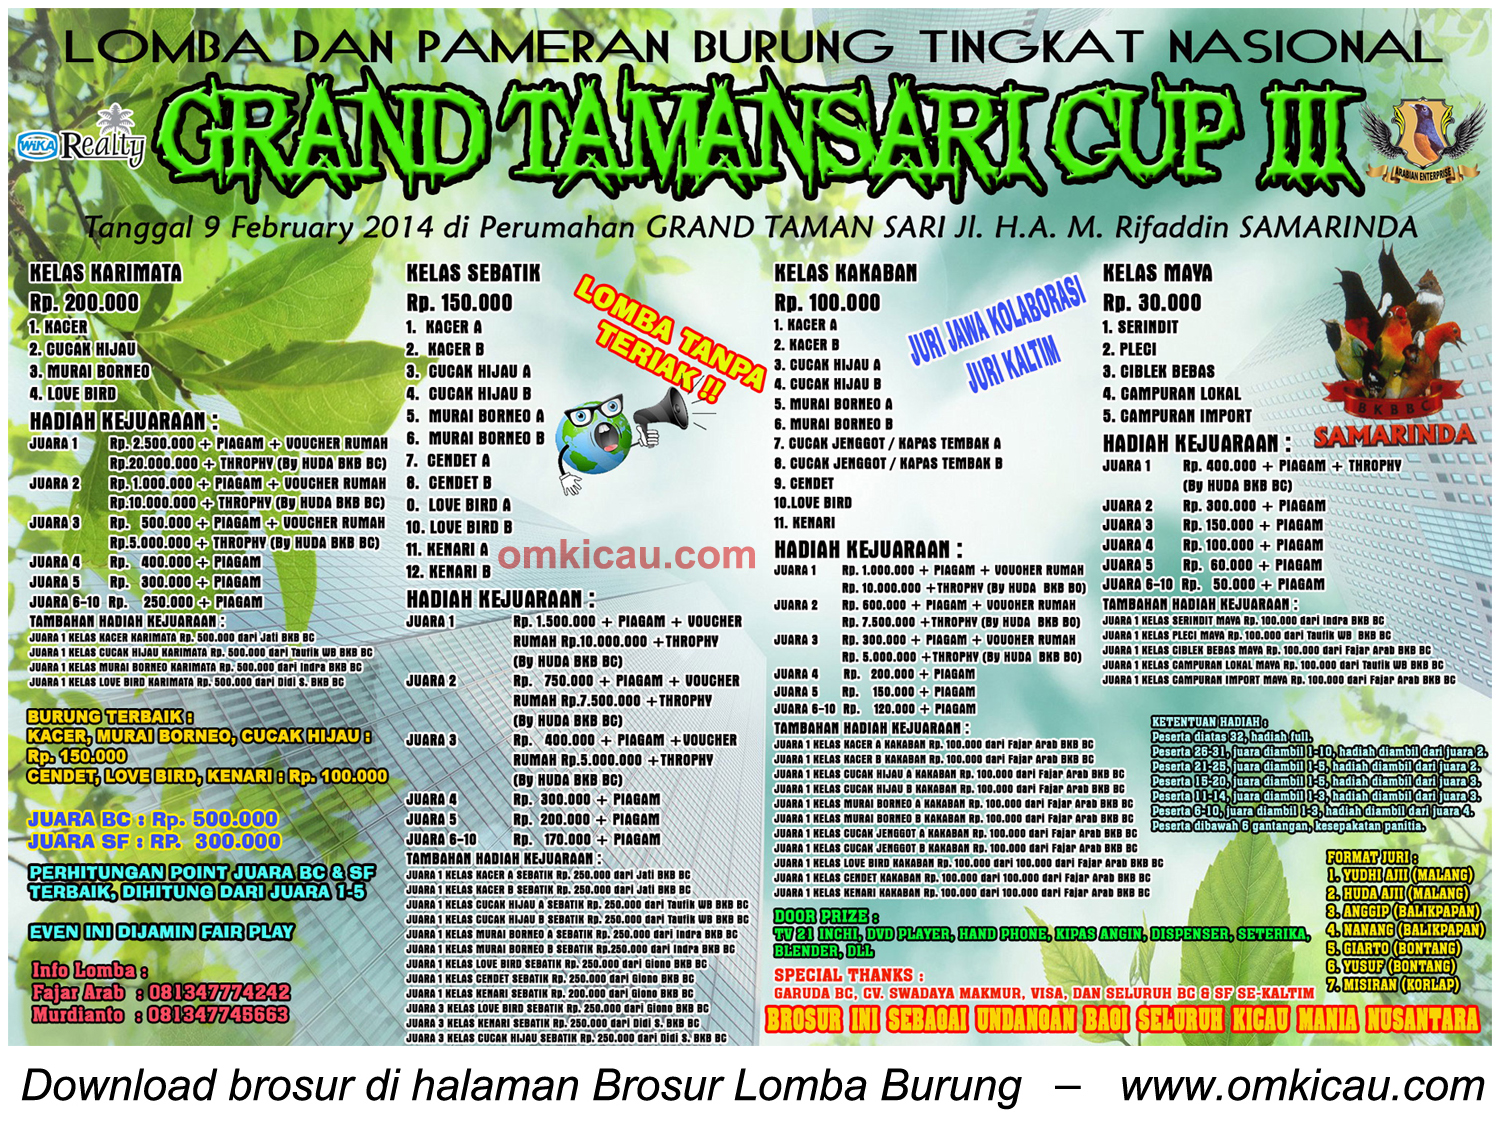 Brosur Lomba Burung Berkicau Grand Tamansari Cup III, Samarinda, 9 Februari 2014